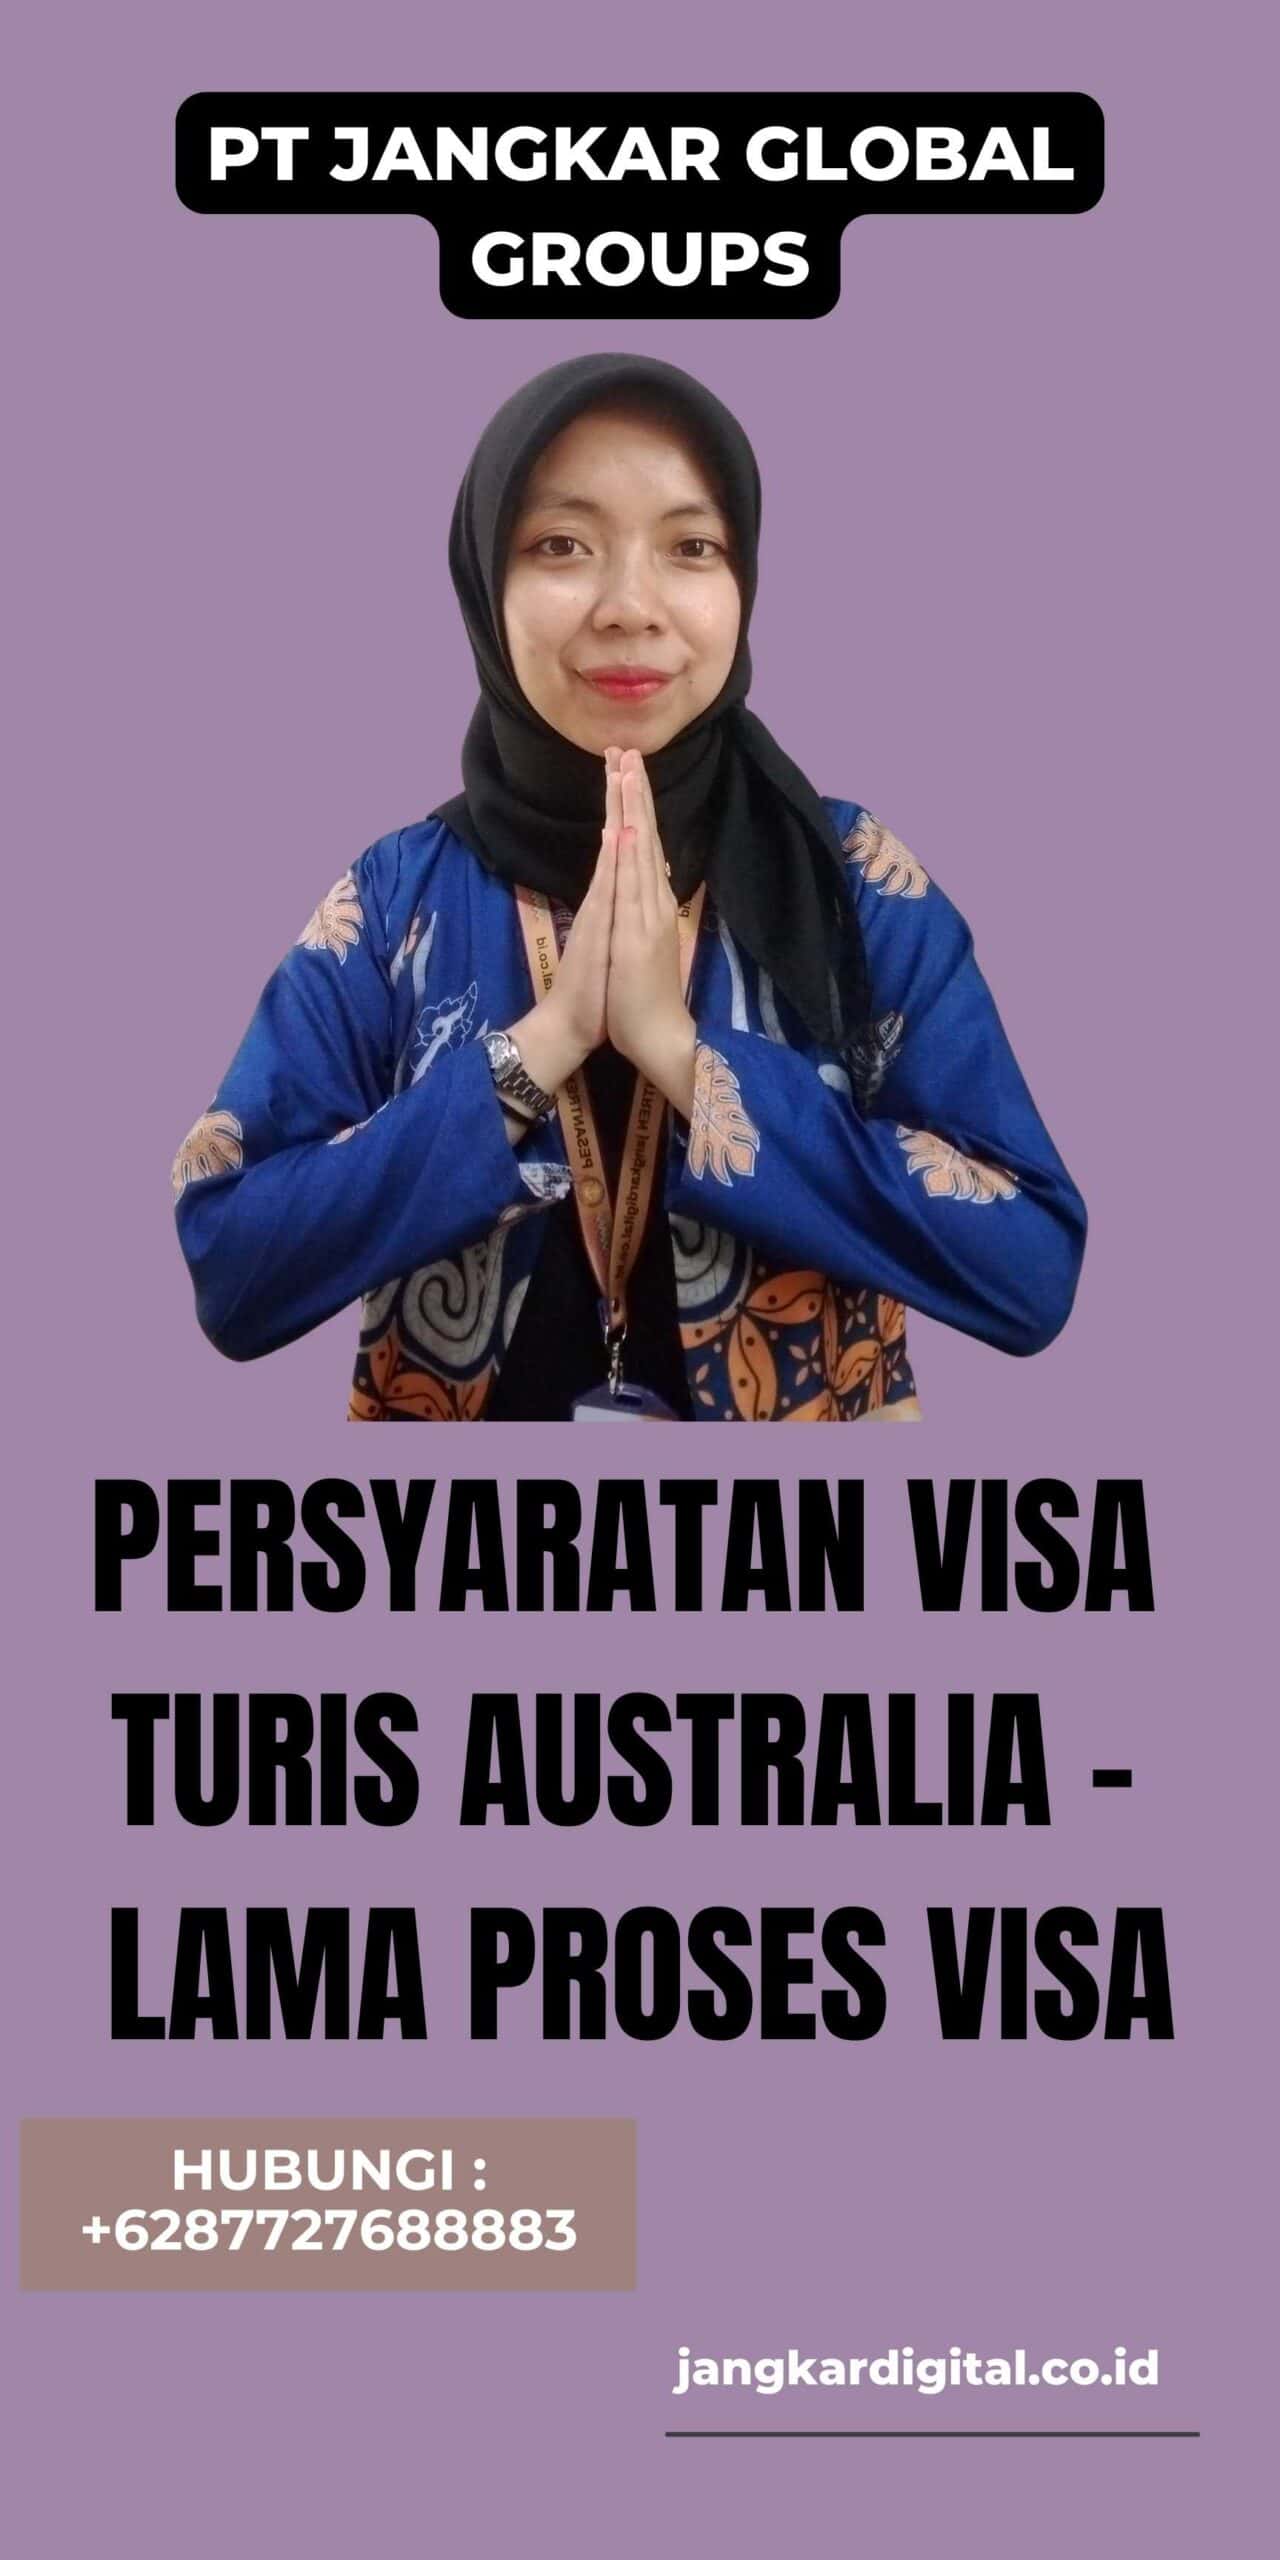 Persyaratan Visa Turis Australia - Lama Proses Visa